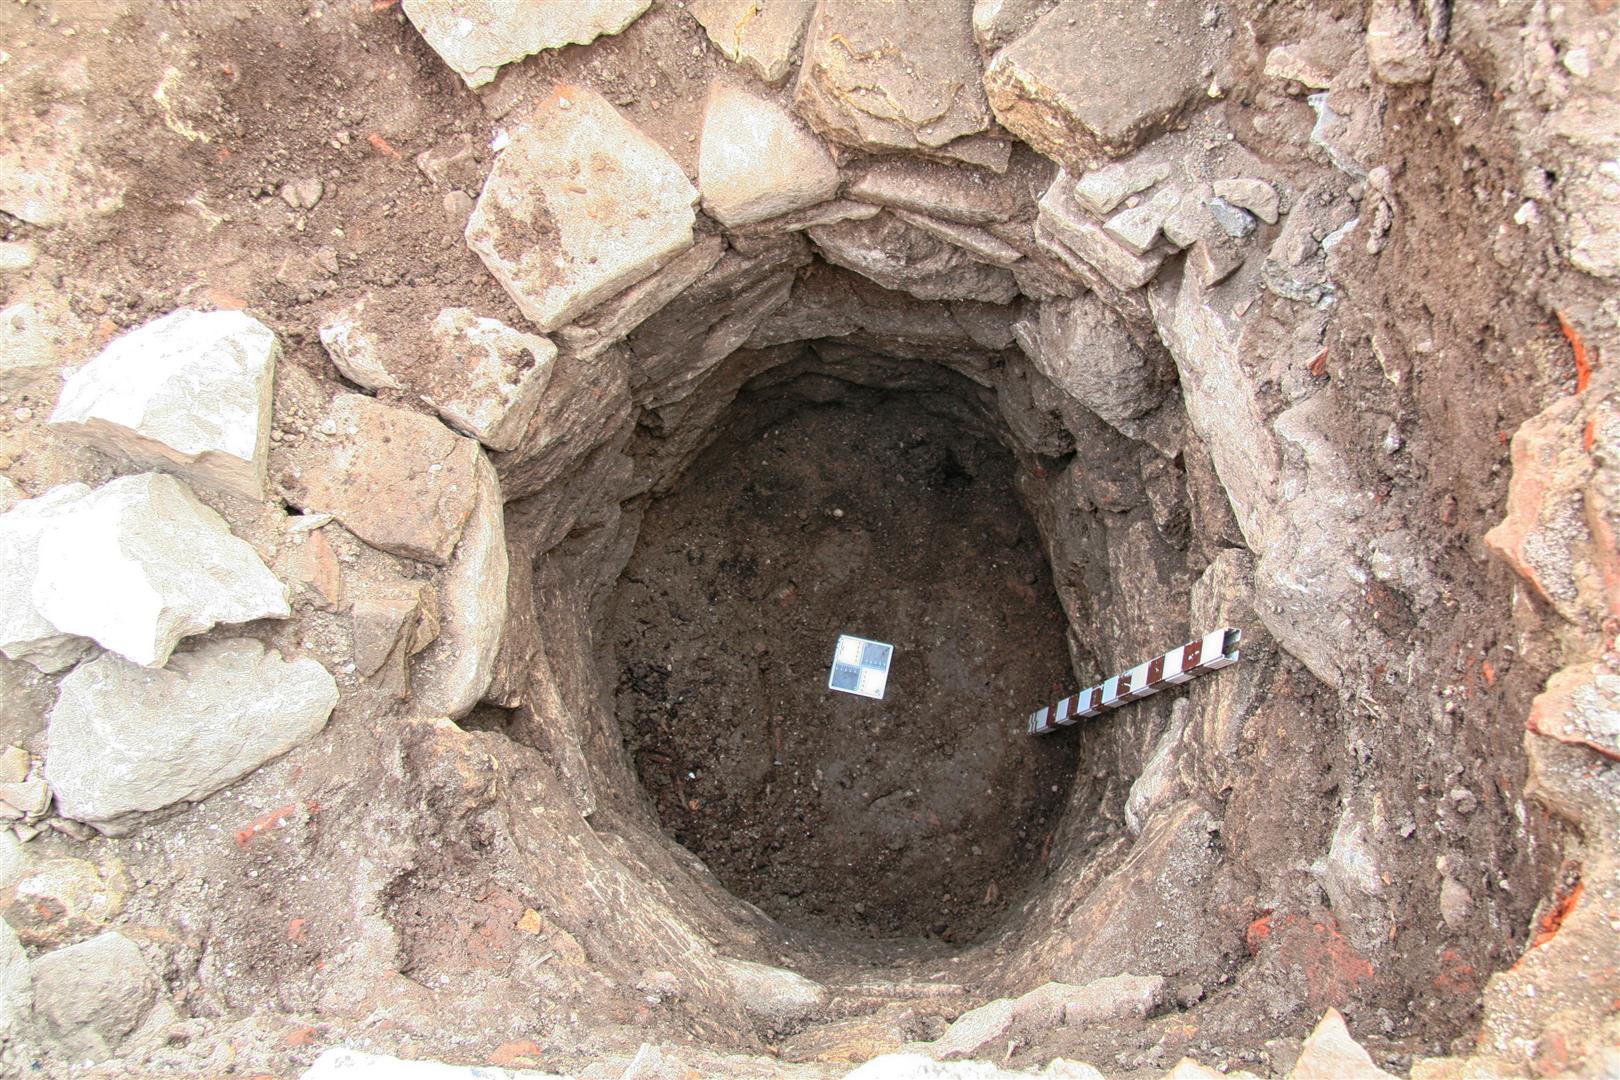 Fântână descoperită arheologic (probabil secolul al XVI-lea) în curtea Universităţii „1 Decembrie 1918” din Alba Iulia (inedit).